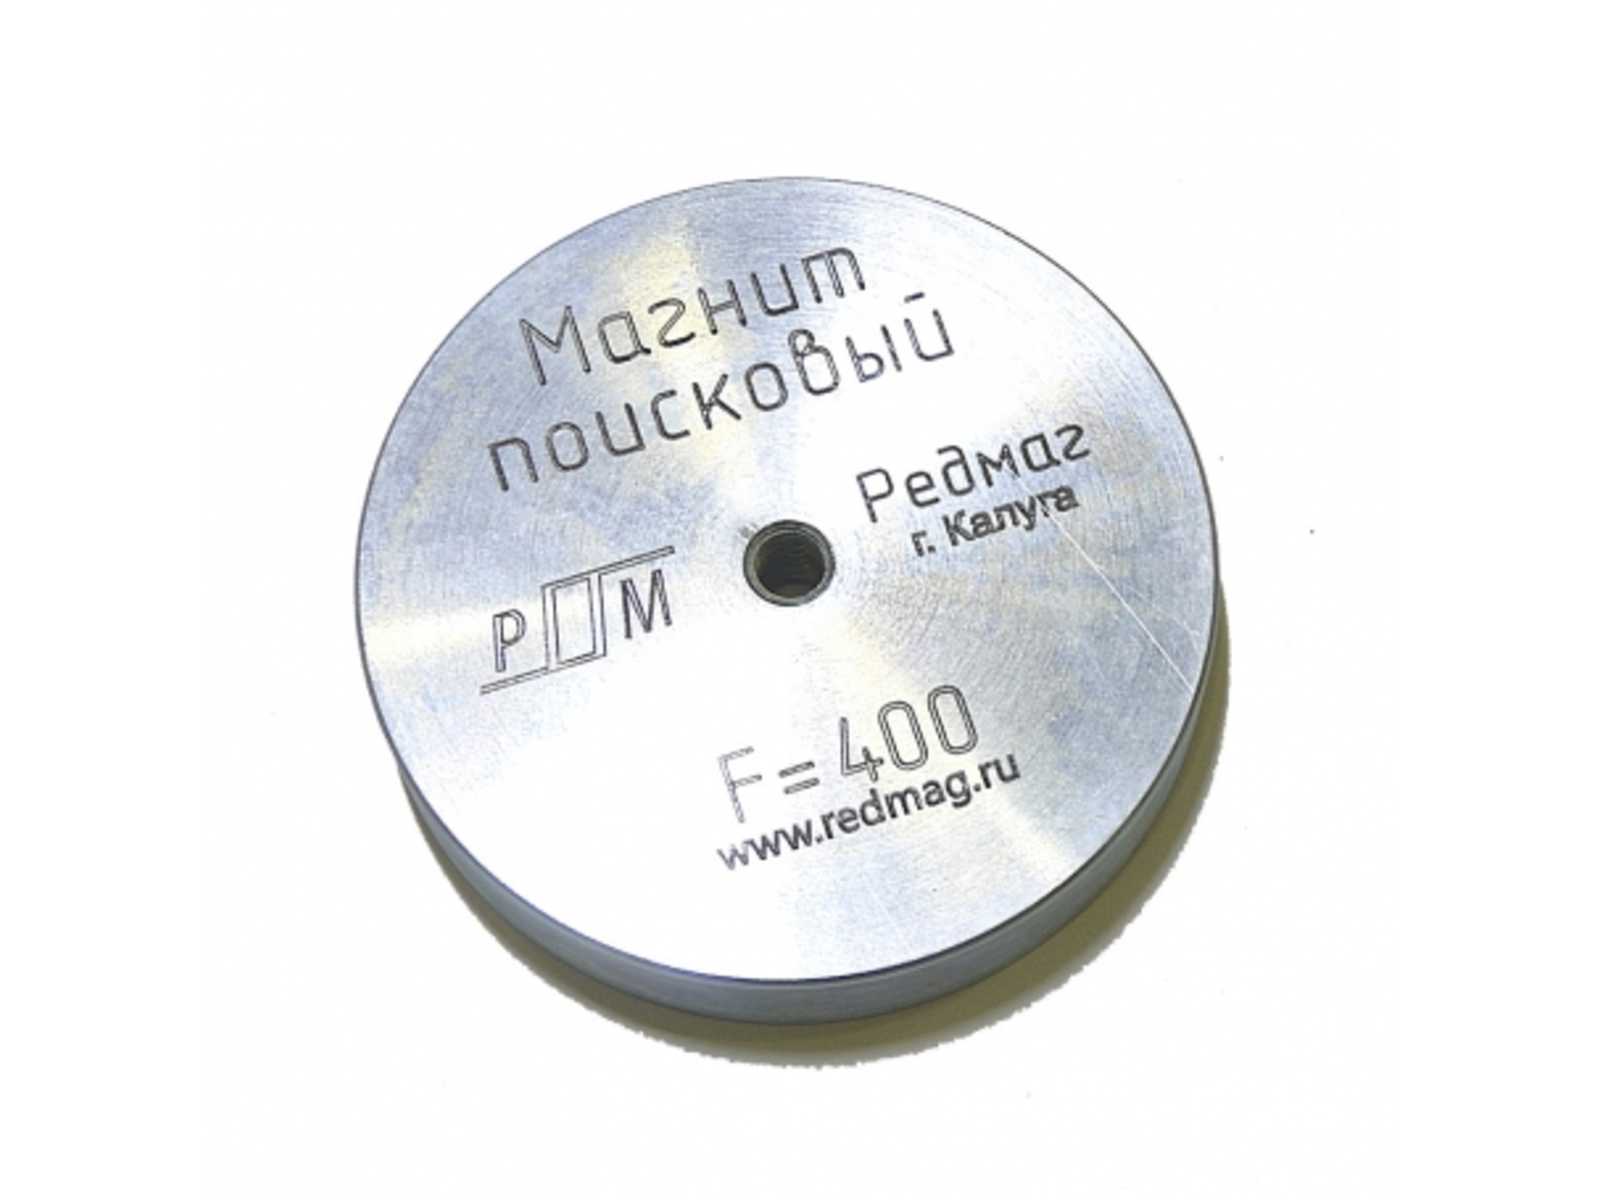 Поисковый магнит Редмаг F400 (односторонний) поисковый магнит редмаг 2 f120 двусторонний